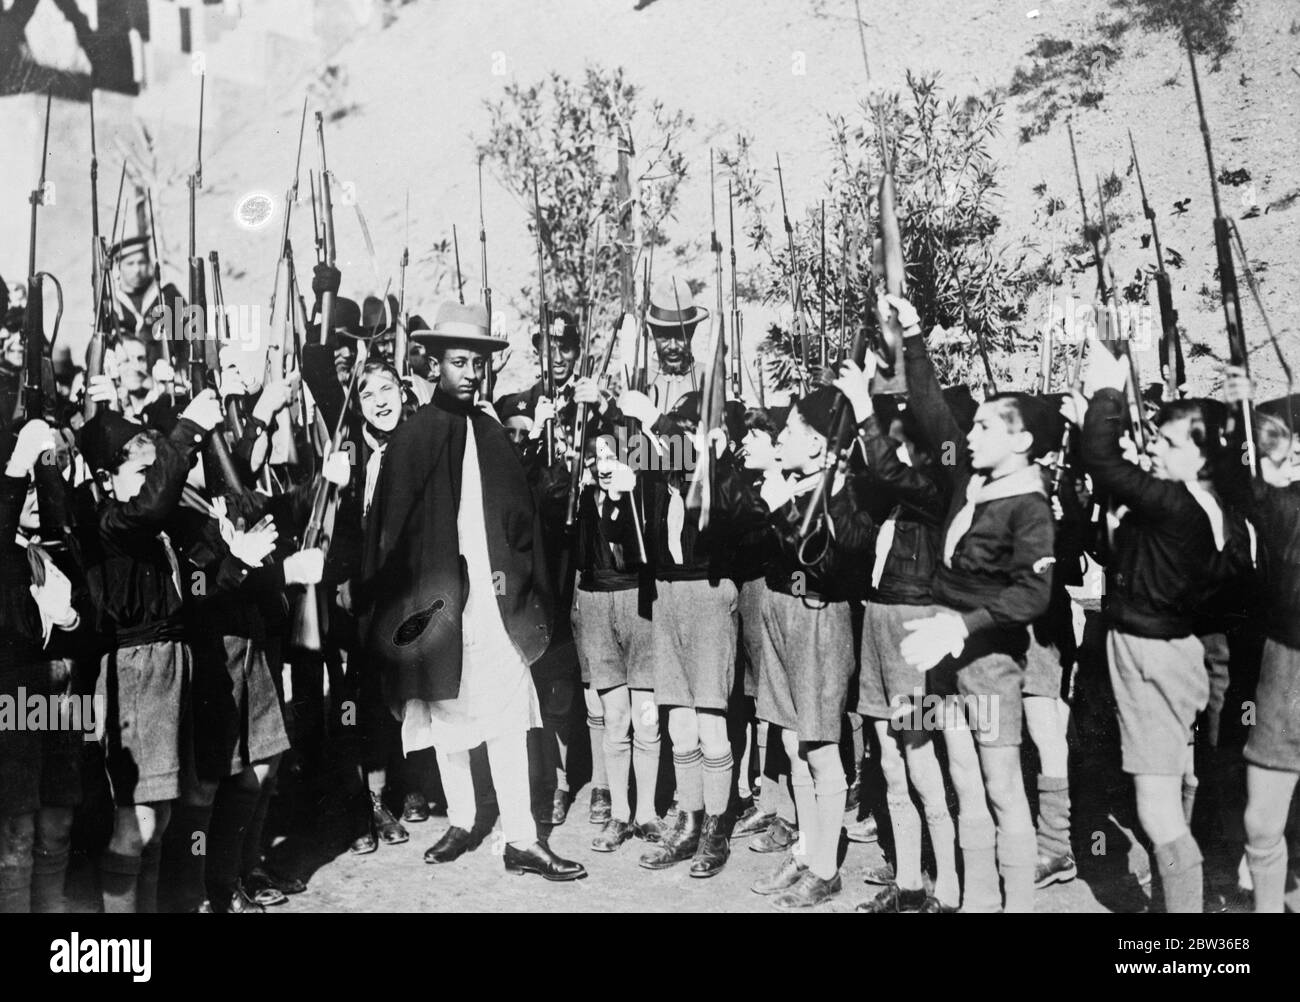 Kronprinz von Äthiopien Asfa Wossen von jungen Faschisten begrüßt. Junge Faschisten begrüßen den Kronprinzen von Äthiopien, als er während seines Aufenthalts in Rom ihre Ausbildungsräume in Balilla besuchte. 28. Januar 1932 Stockfoto